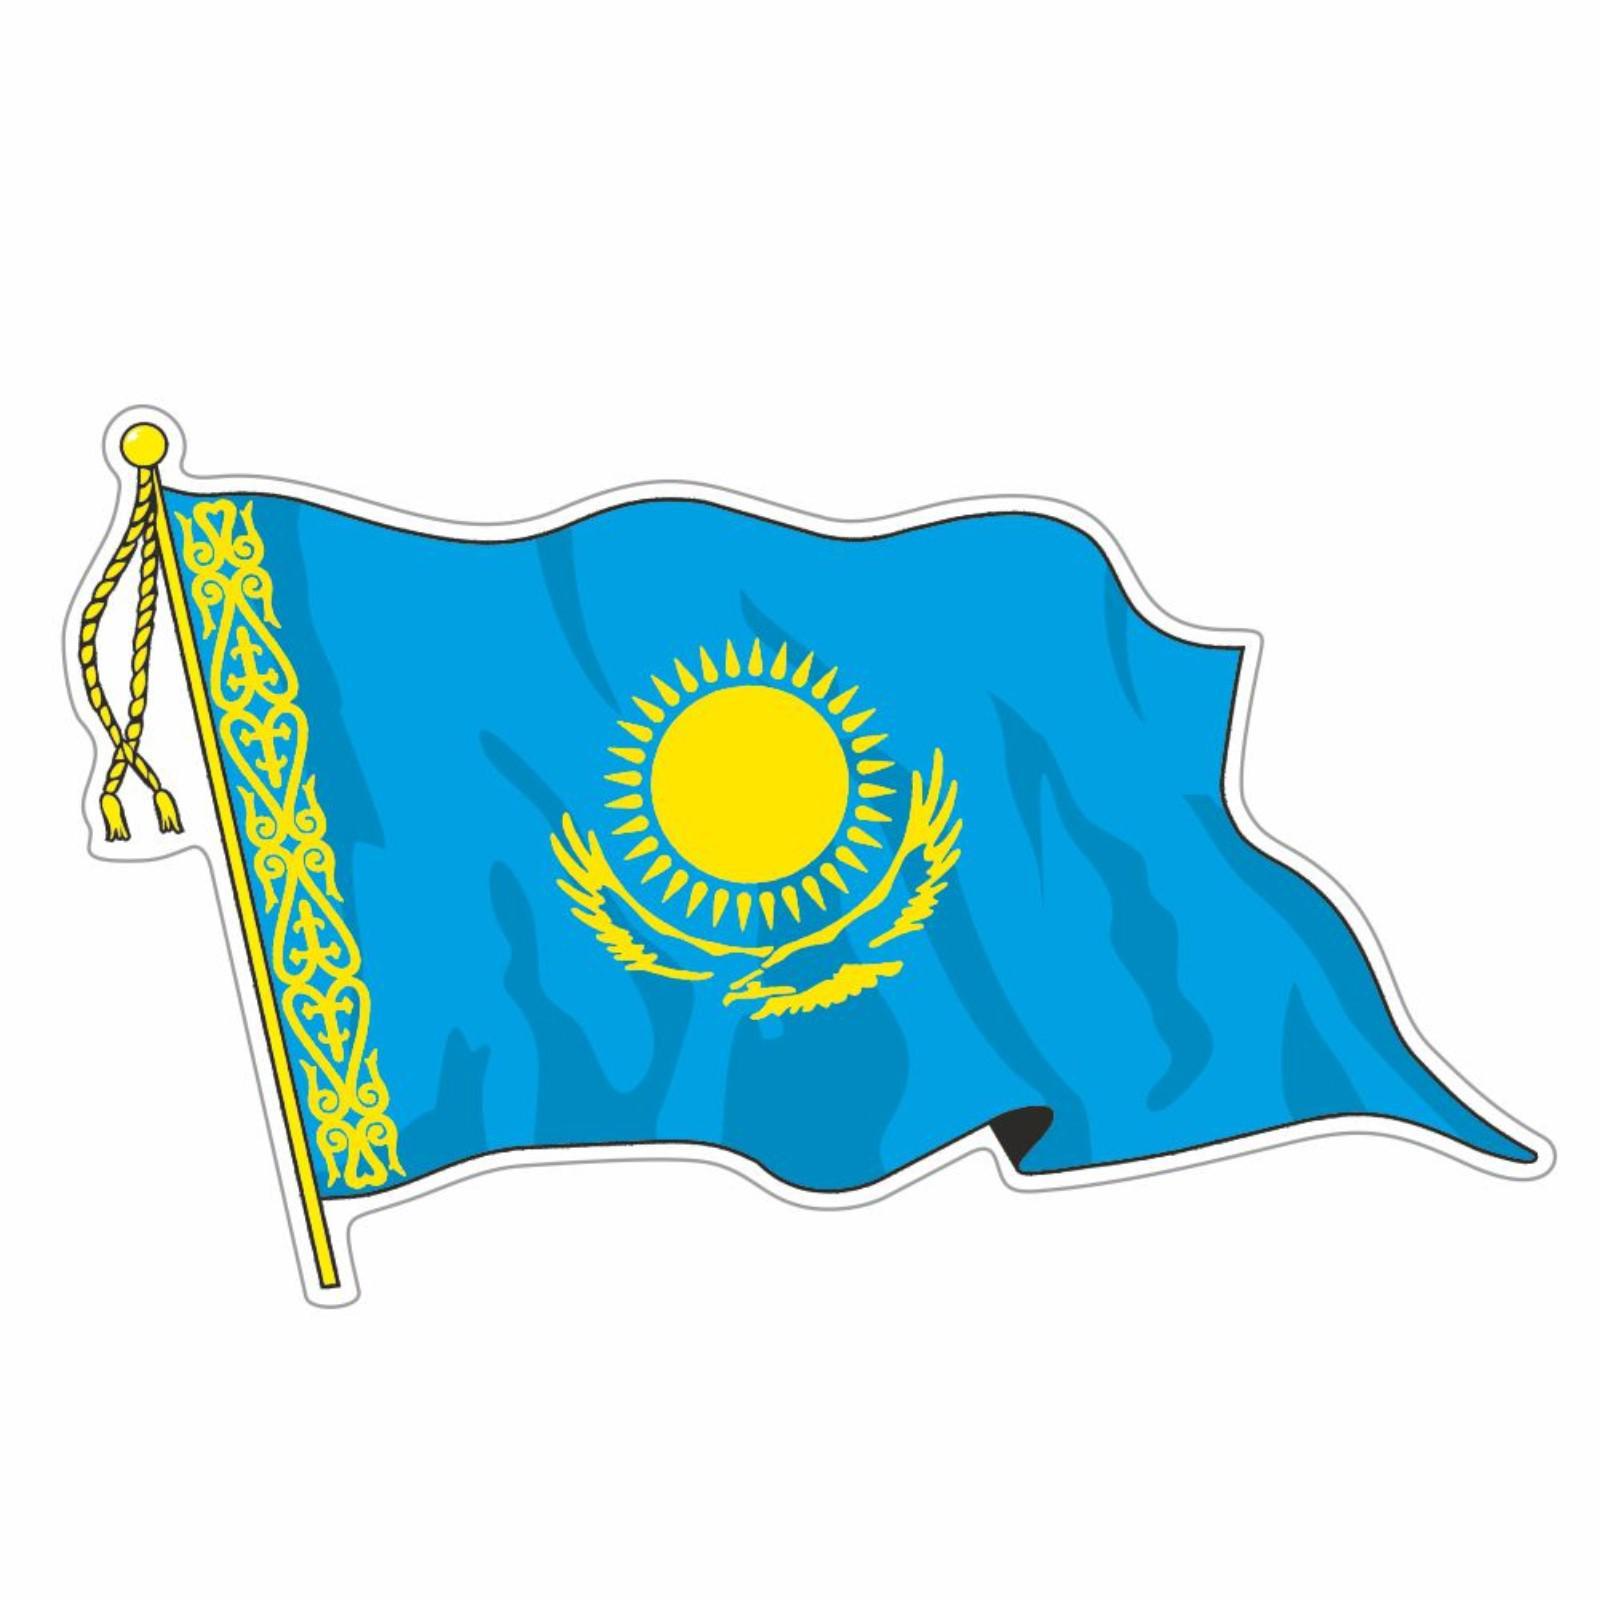 Стоковые фотографии по запросу Флаг казахстана